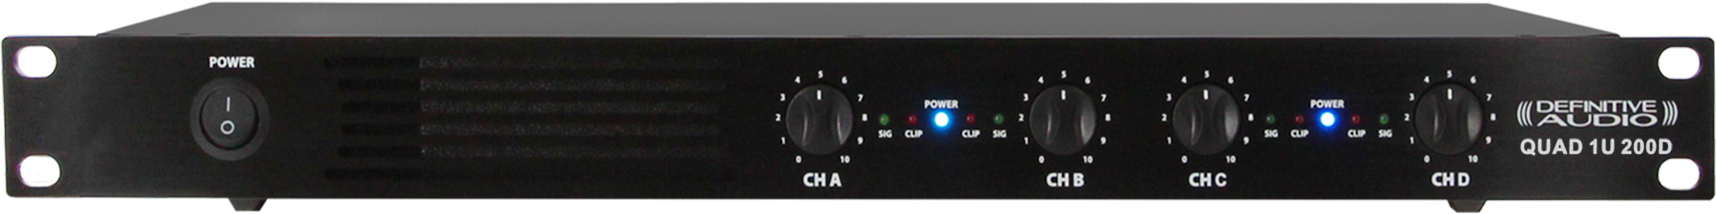 Definitive Audio Quad 1u 200d - Multiple channels power amplifier - Main picture